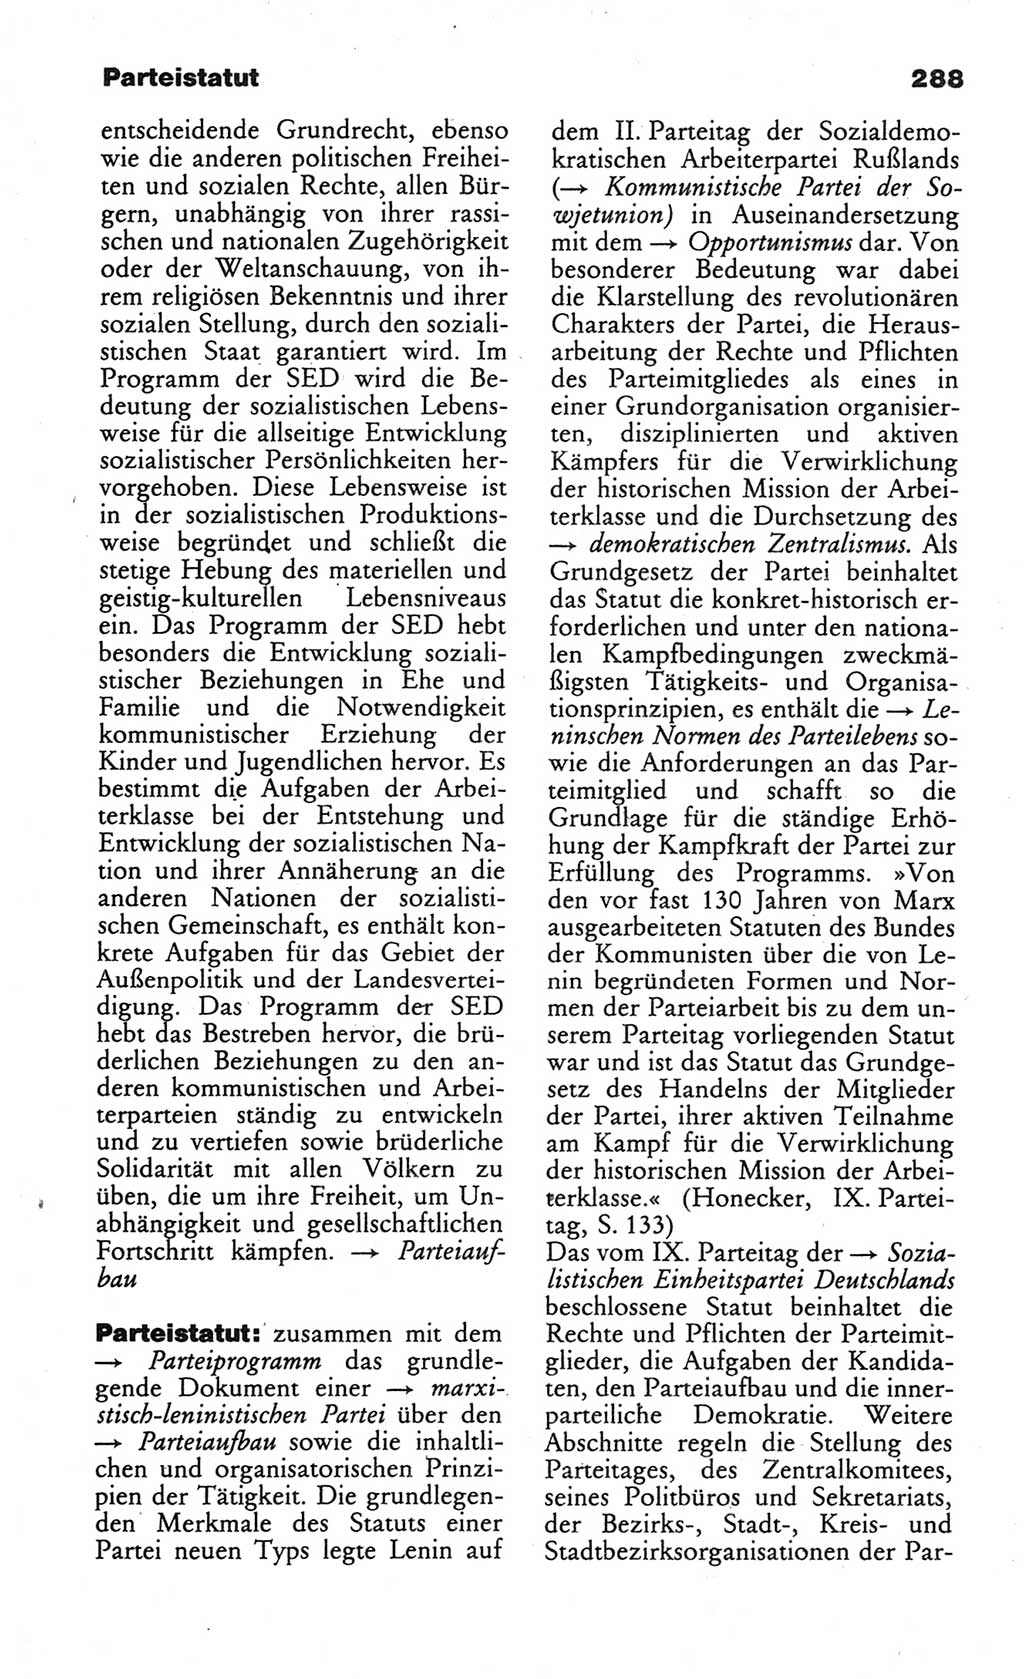 Wörterbuch des wissenschaftlichen Kommunismus [Deutsche Demokratische Republik (DDR)] 1984, Seite 288 (Wb. wiss. Komm. DDR 1984, S. 288)